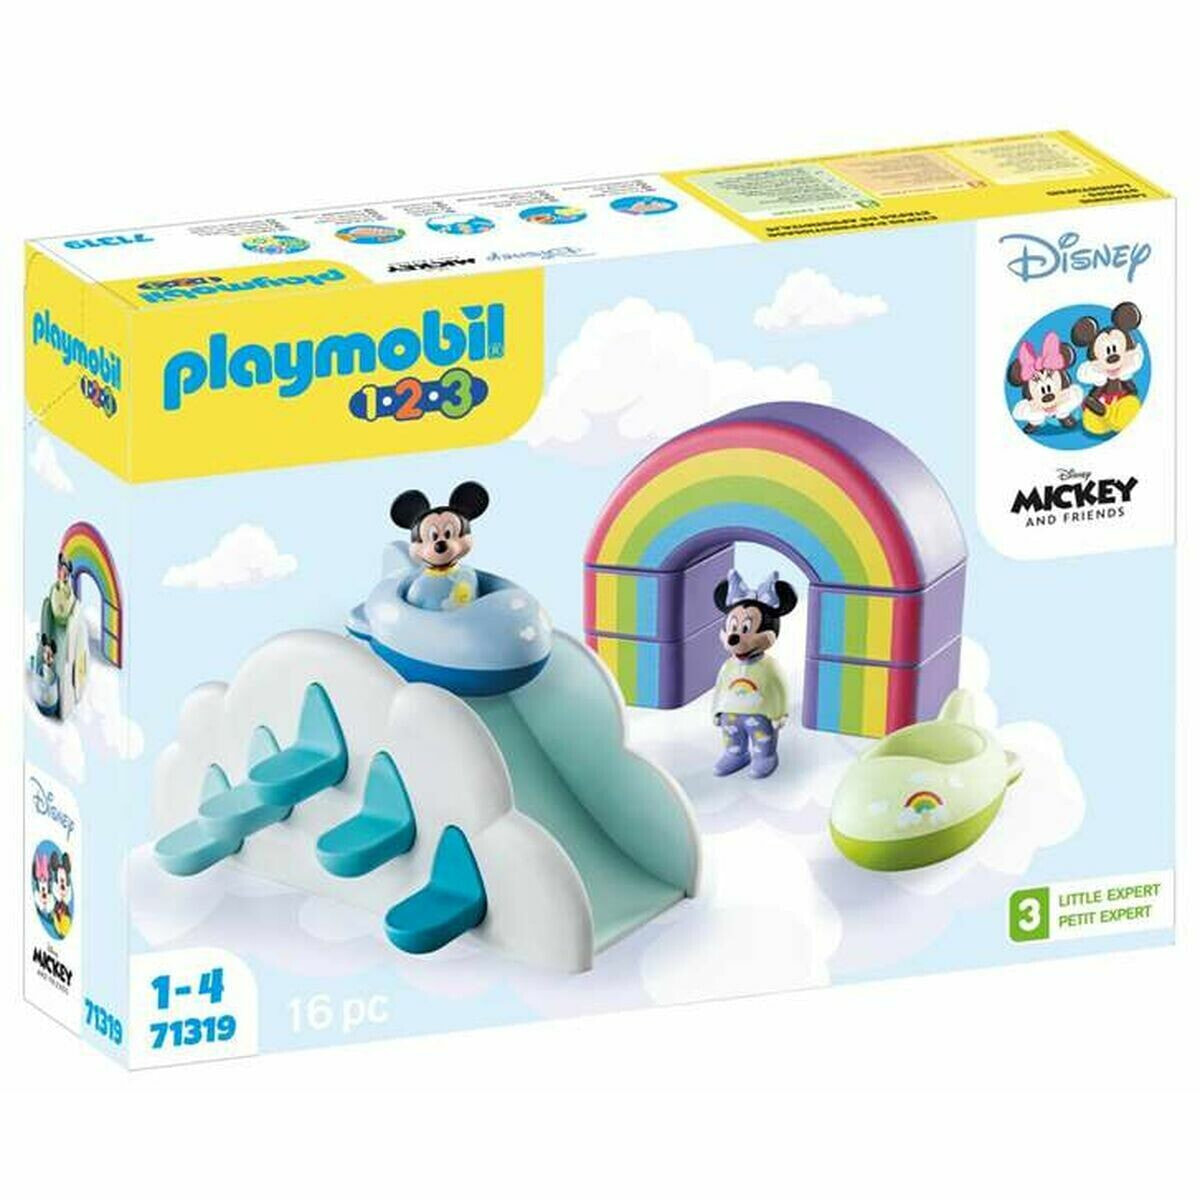 Playset Playmobil 1,2,3 Mickey 16 Pieces